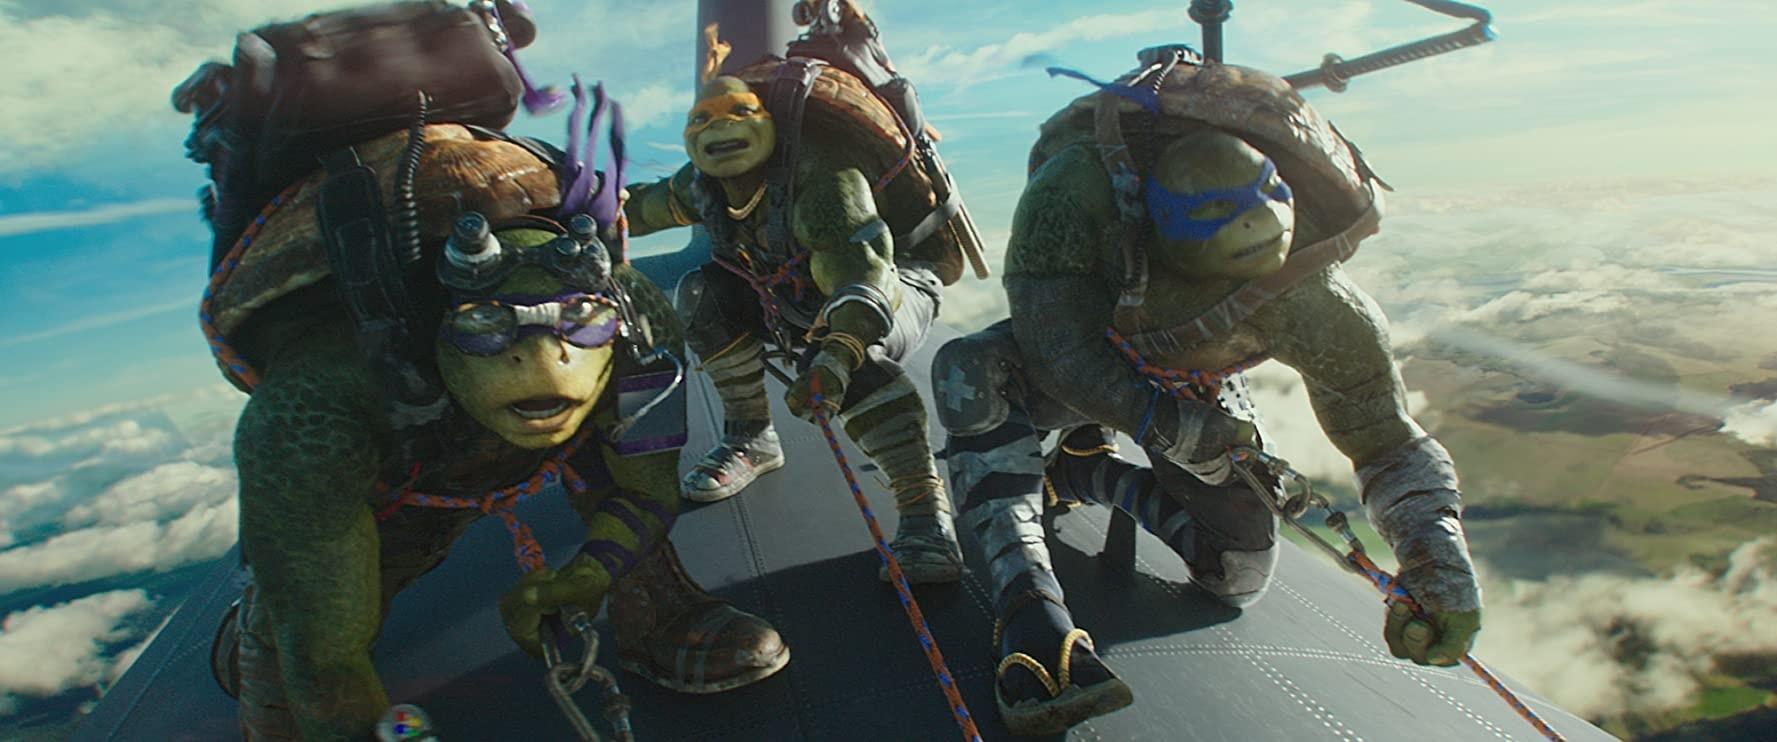 cenas do filme tartarugas ninjas